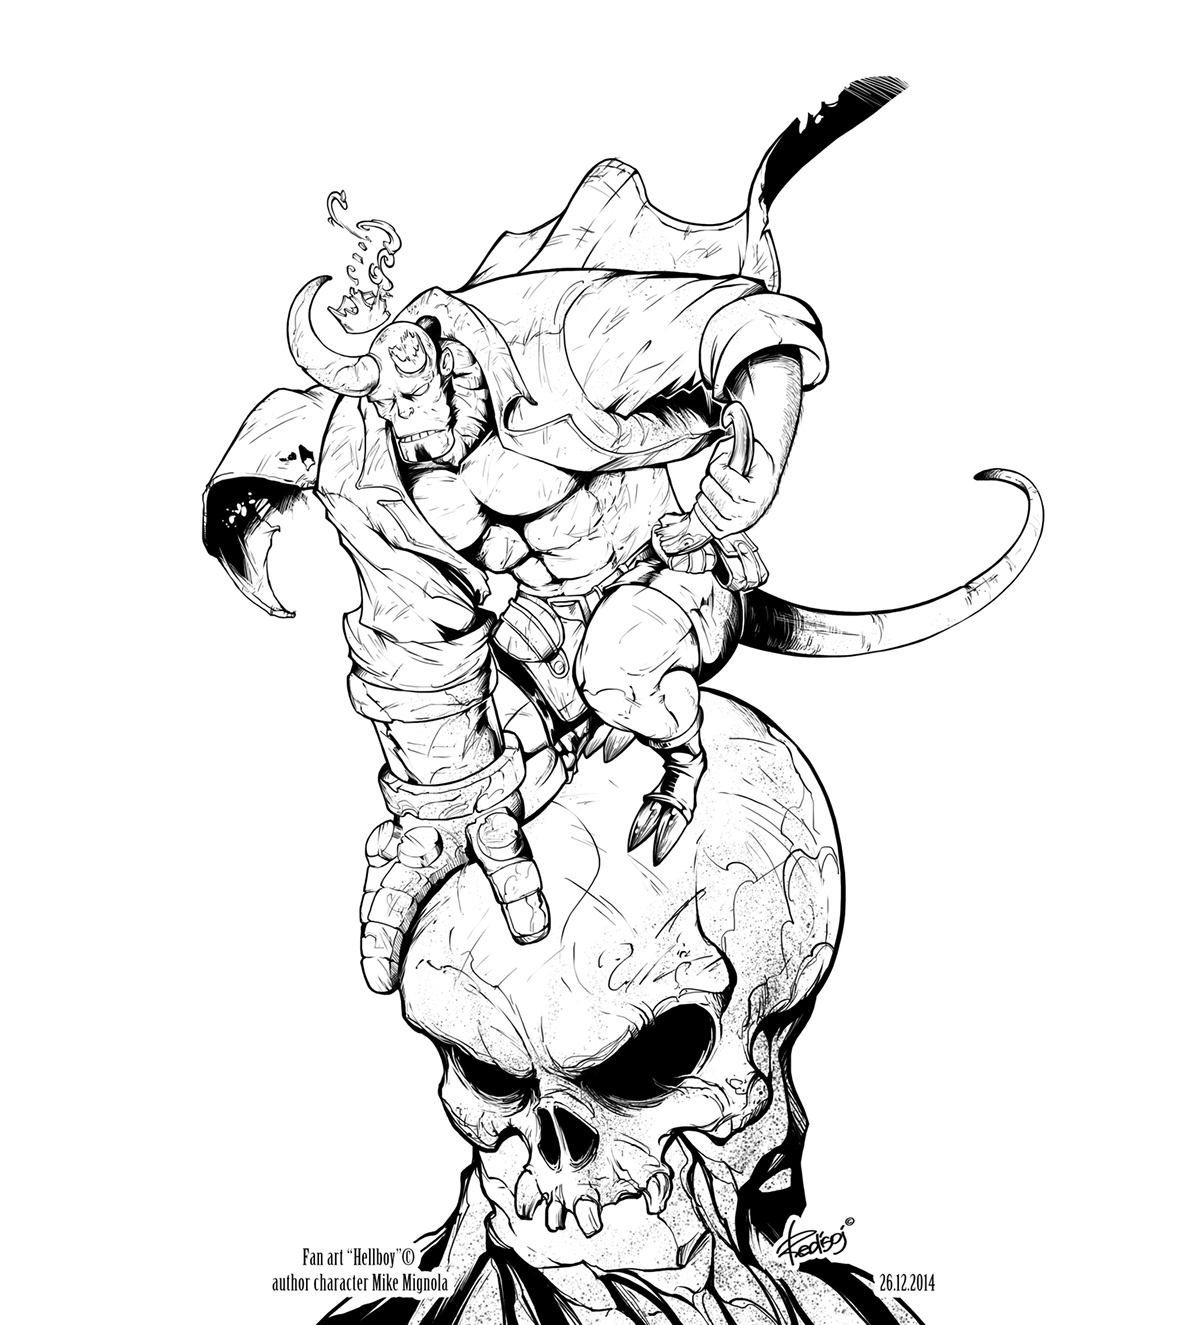 Hellboy redisoj art Character skull bones comics